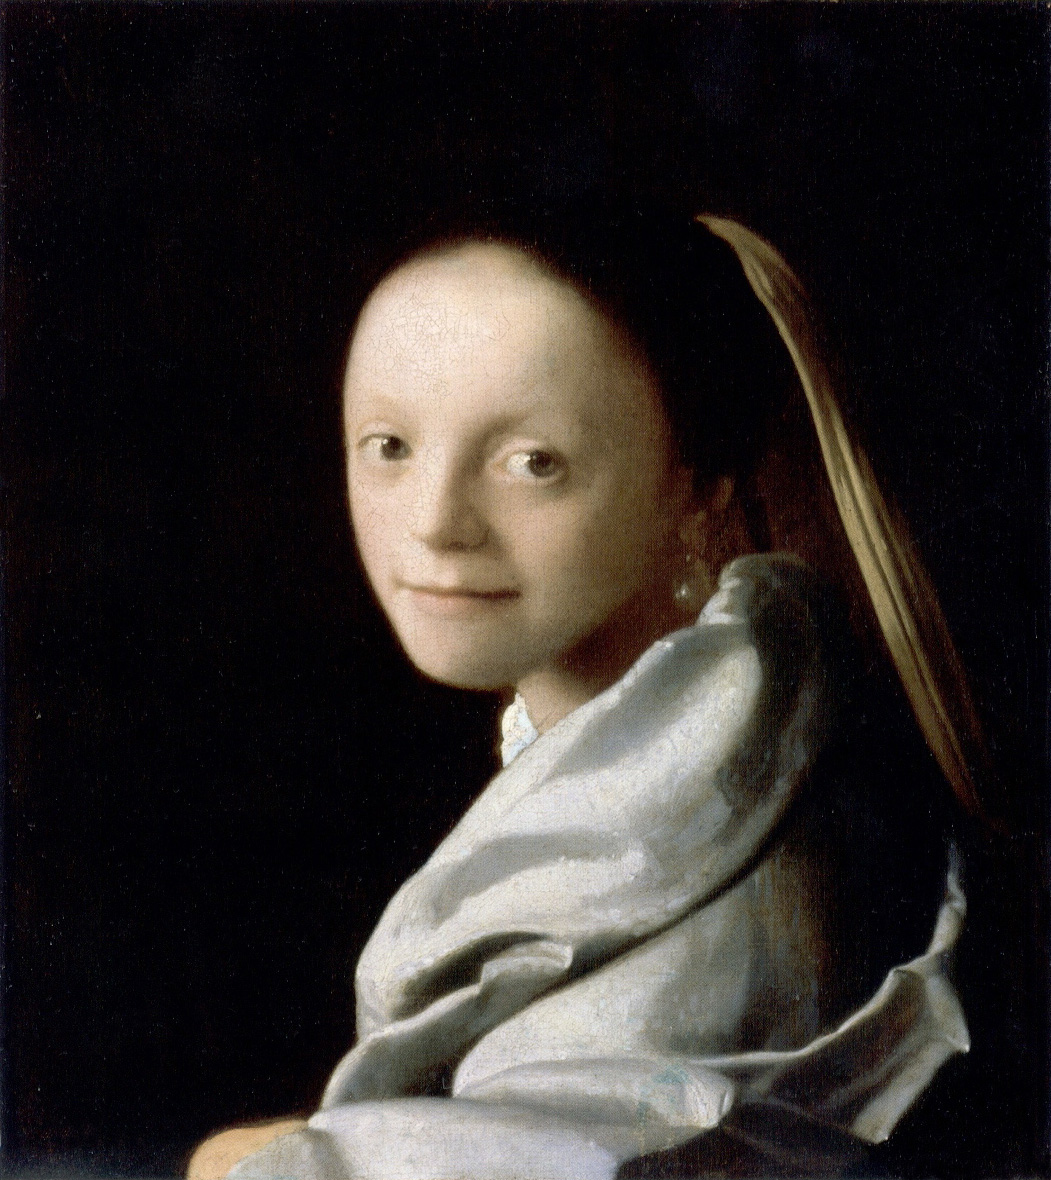 Etude d’une jeune femme by Johannes Vermeer - 1665 - 44.5 x 40 cm Metropolitan Museum of Art